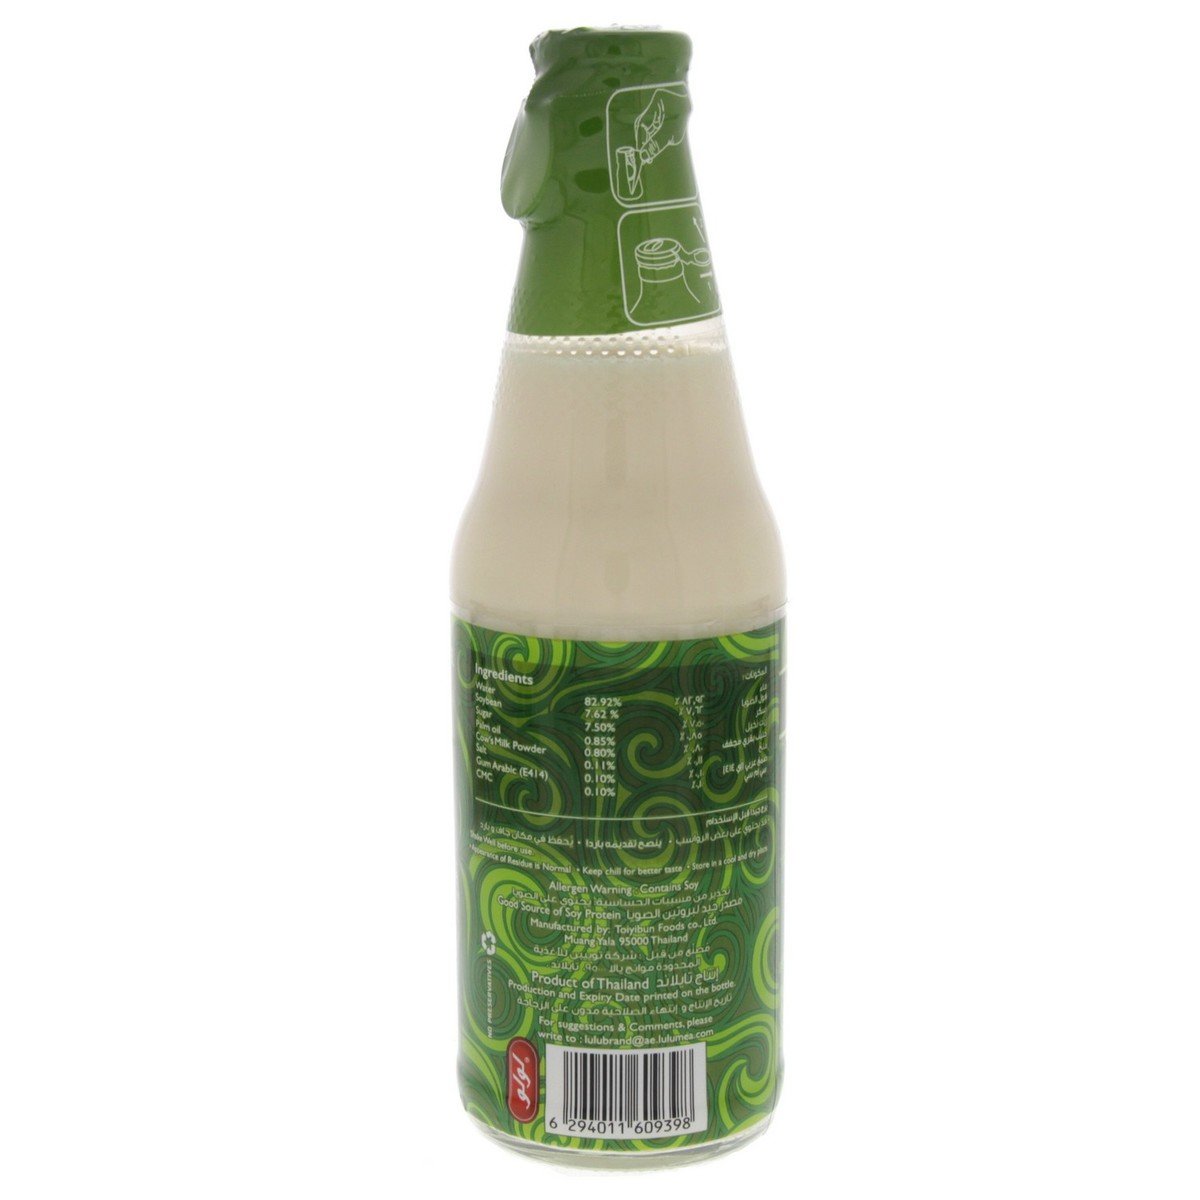 LuLu Soy Milk Original 300 ml